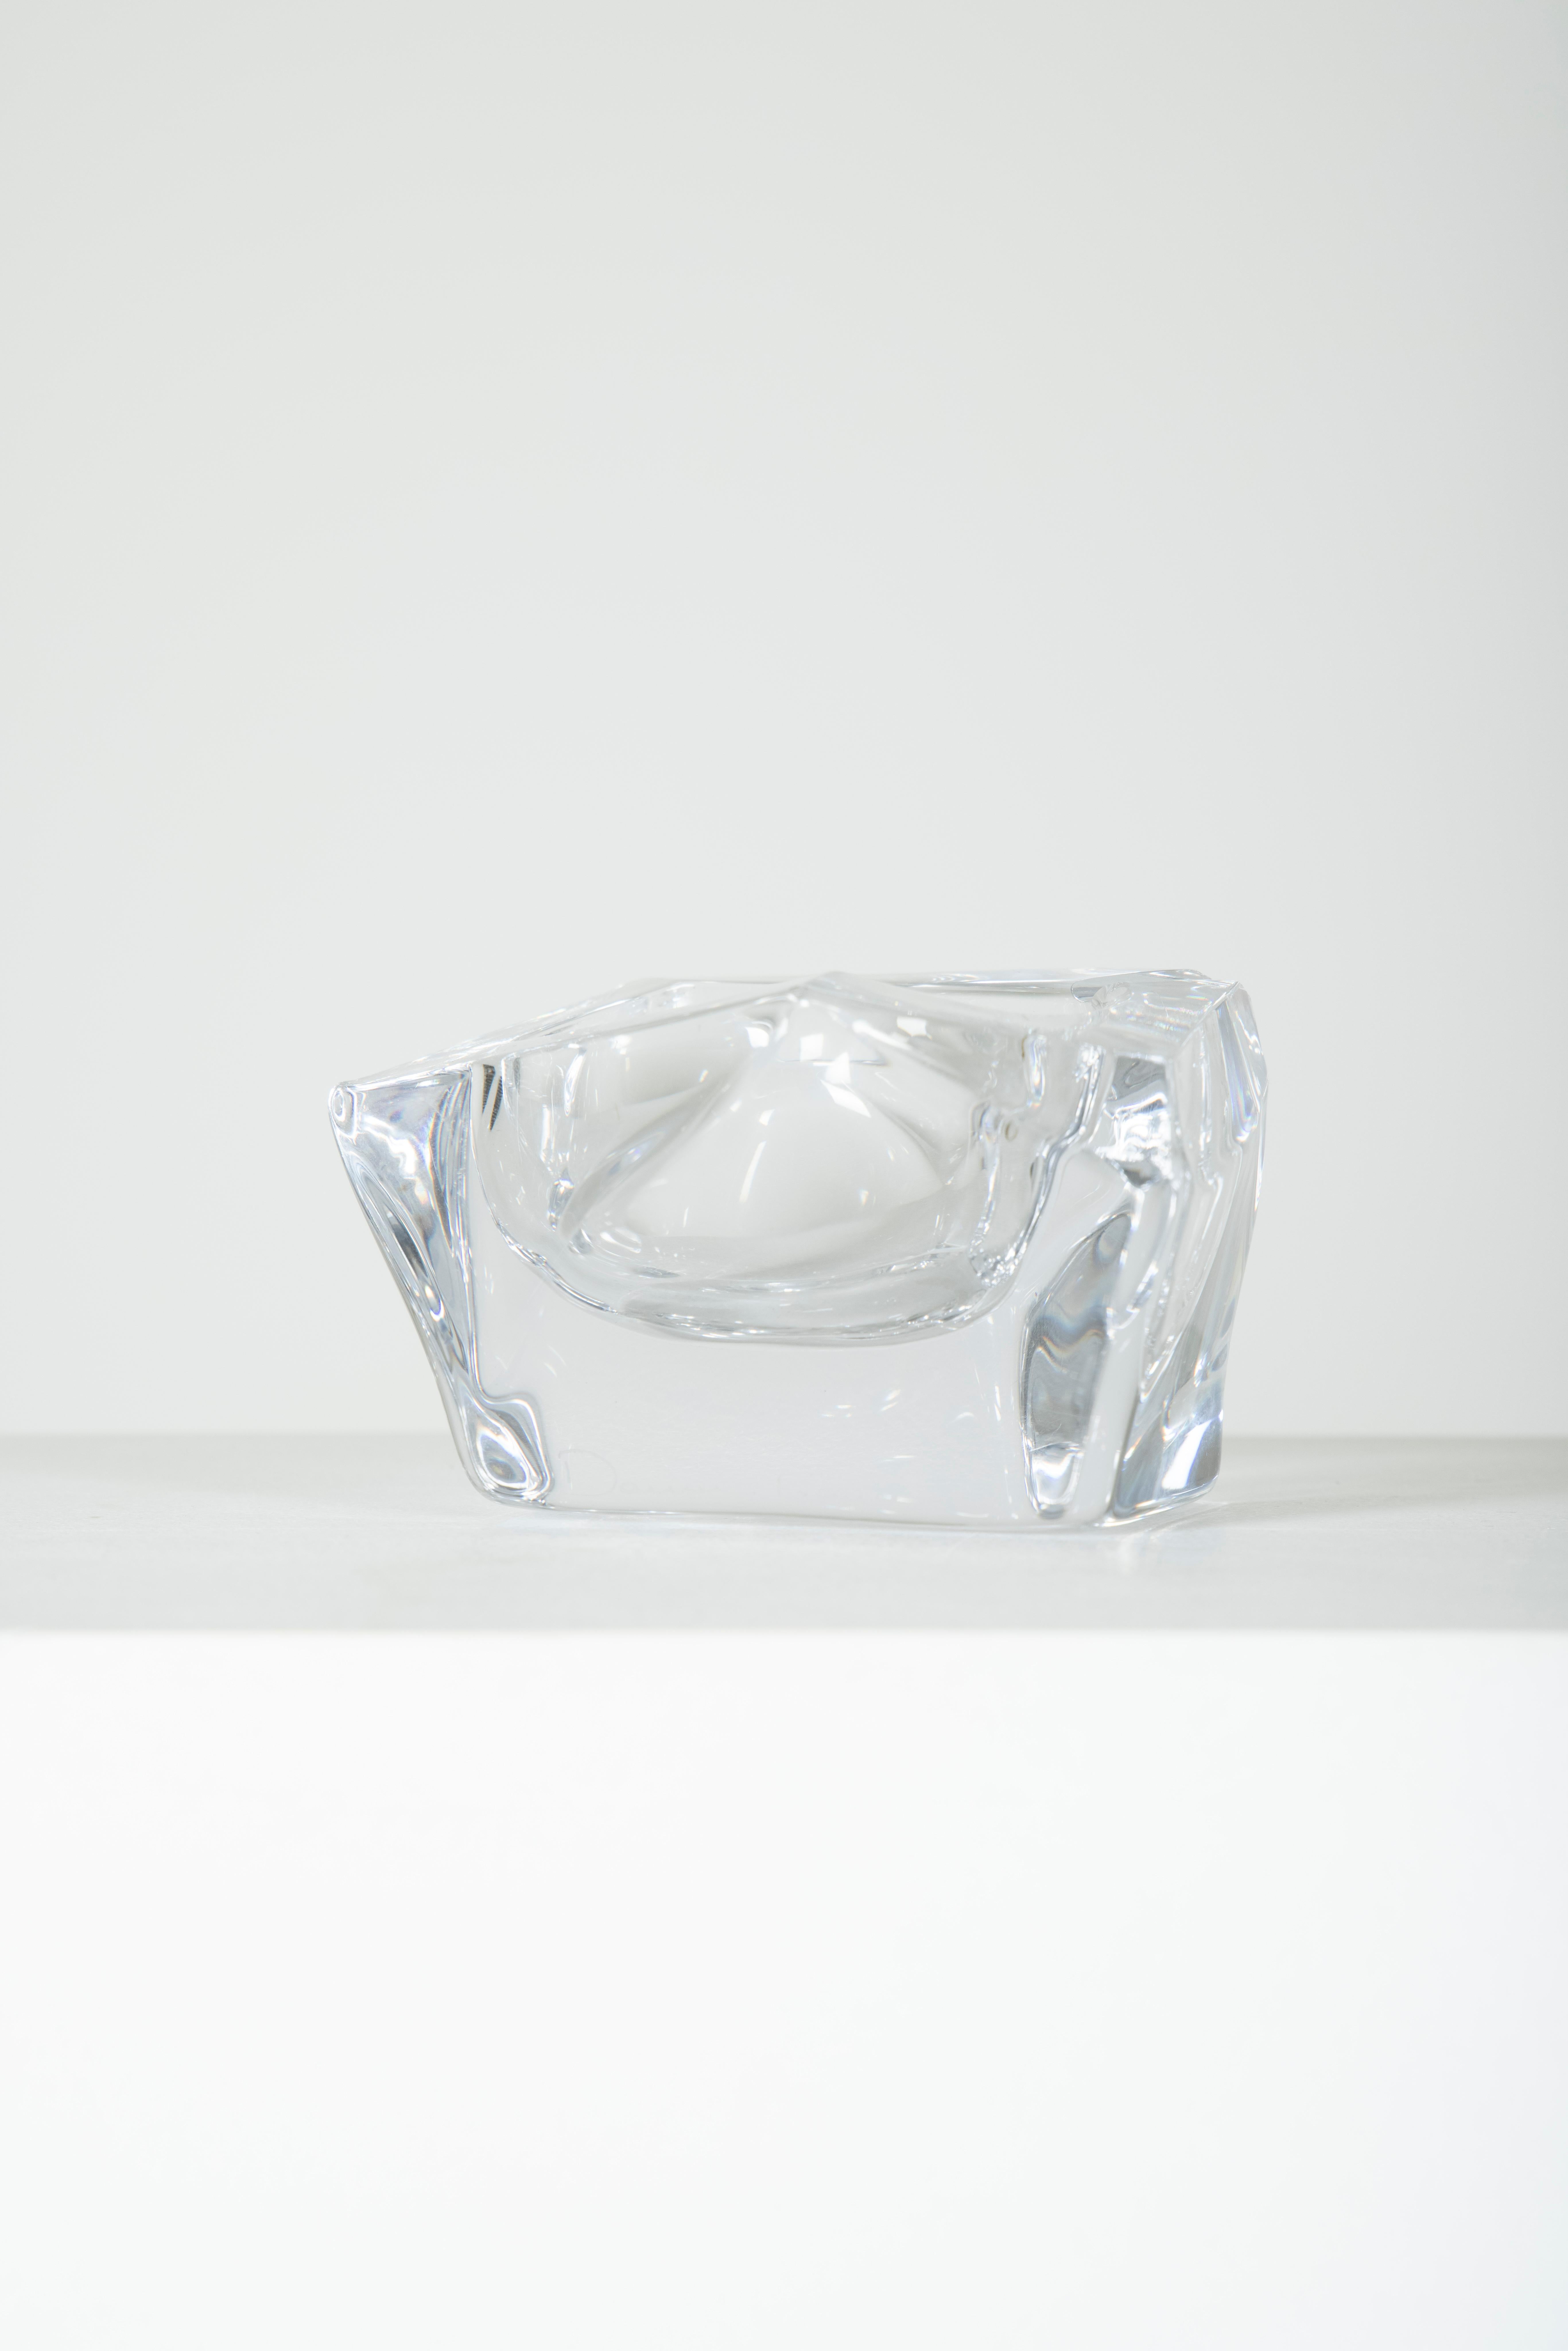 20th Century Trinket Bowl Polyhedron Crystal Daum, France